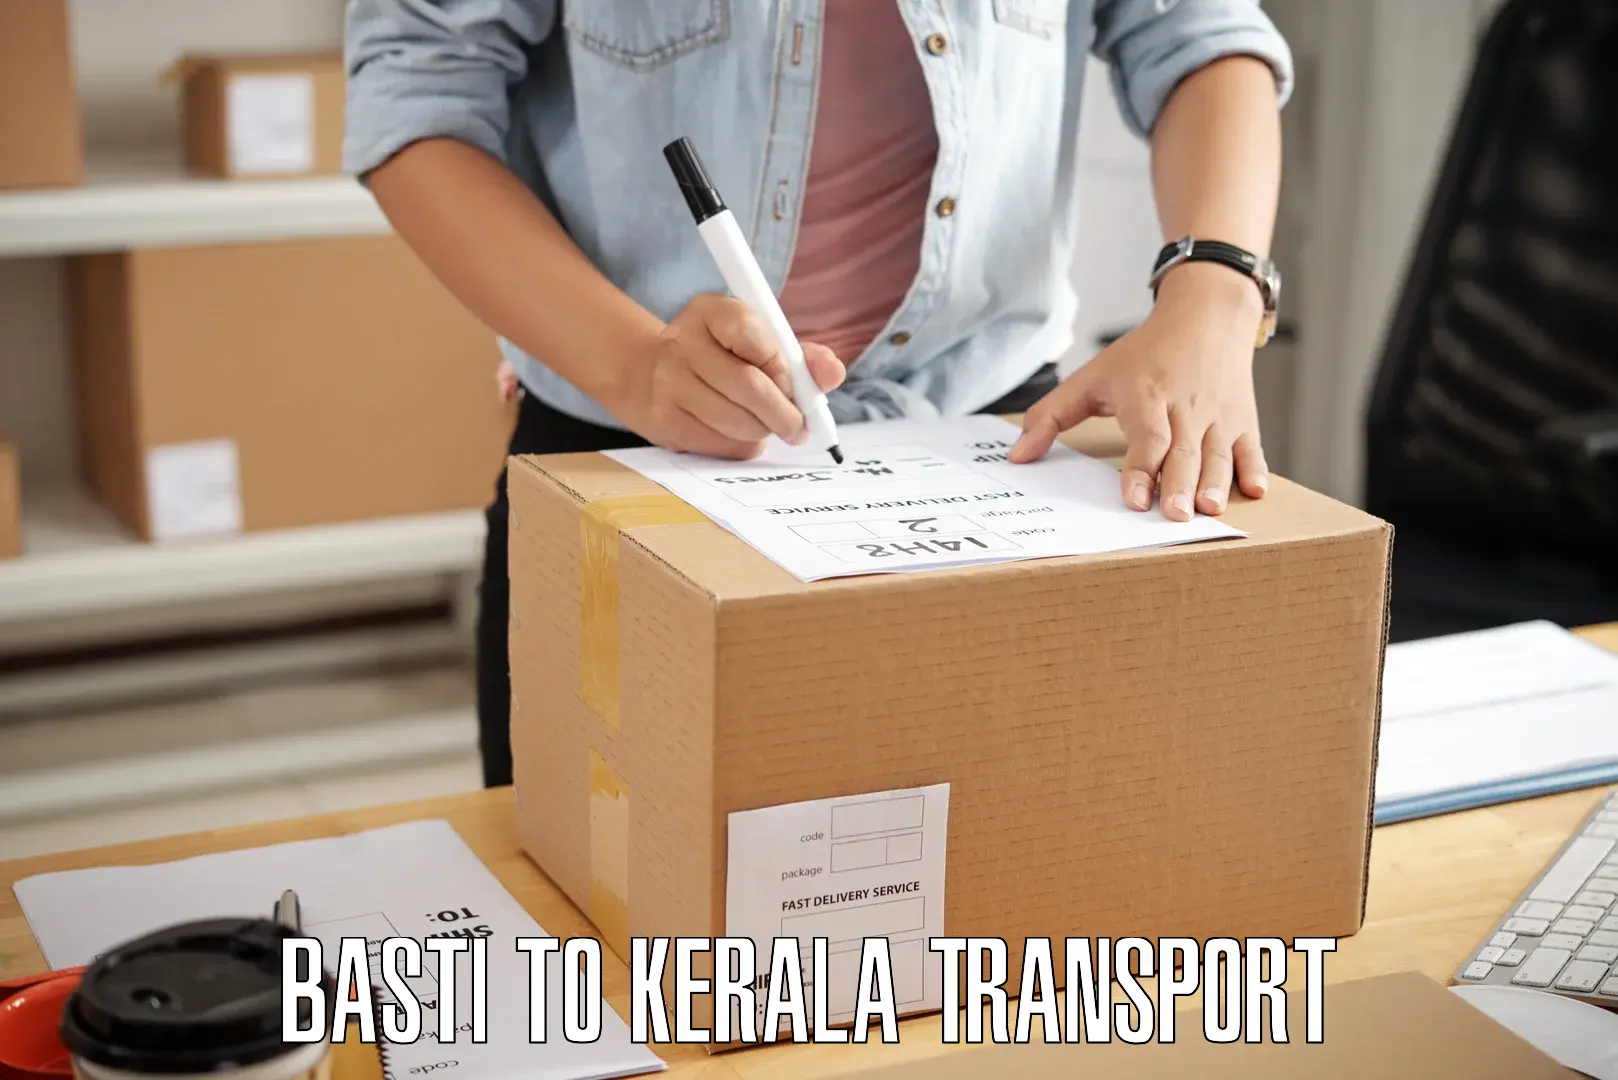 Pick up transport service Basti to Mundakayam